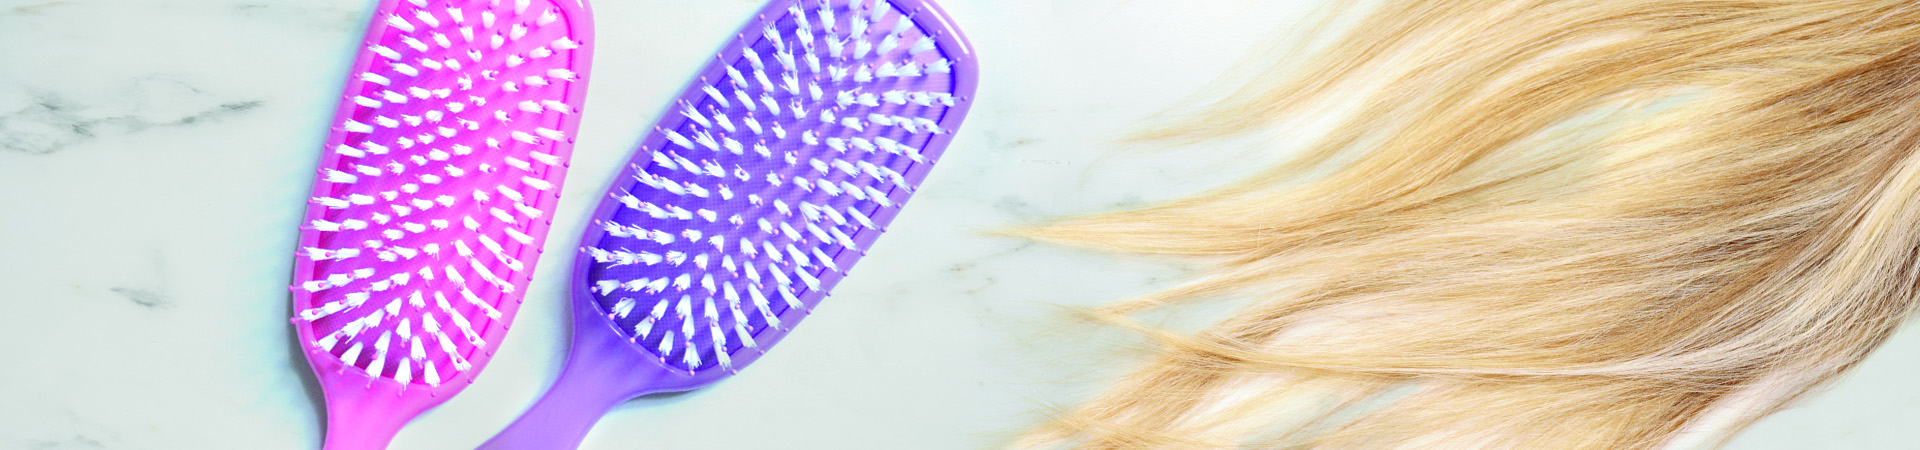 Równowaga PEH włosów – na czym polega ten sposób pielęgnacji? | Killys